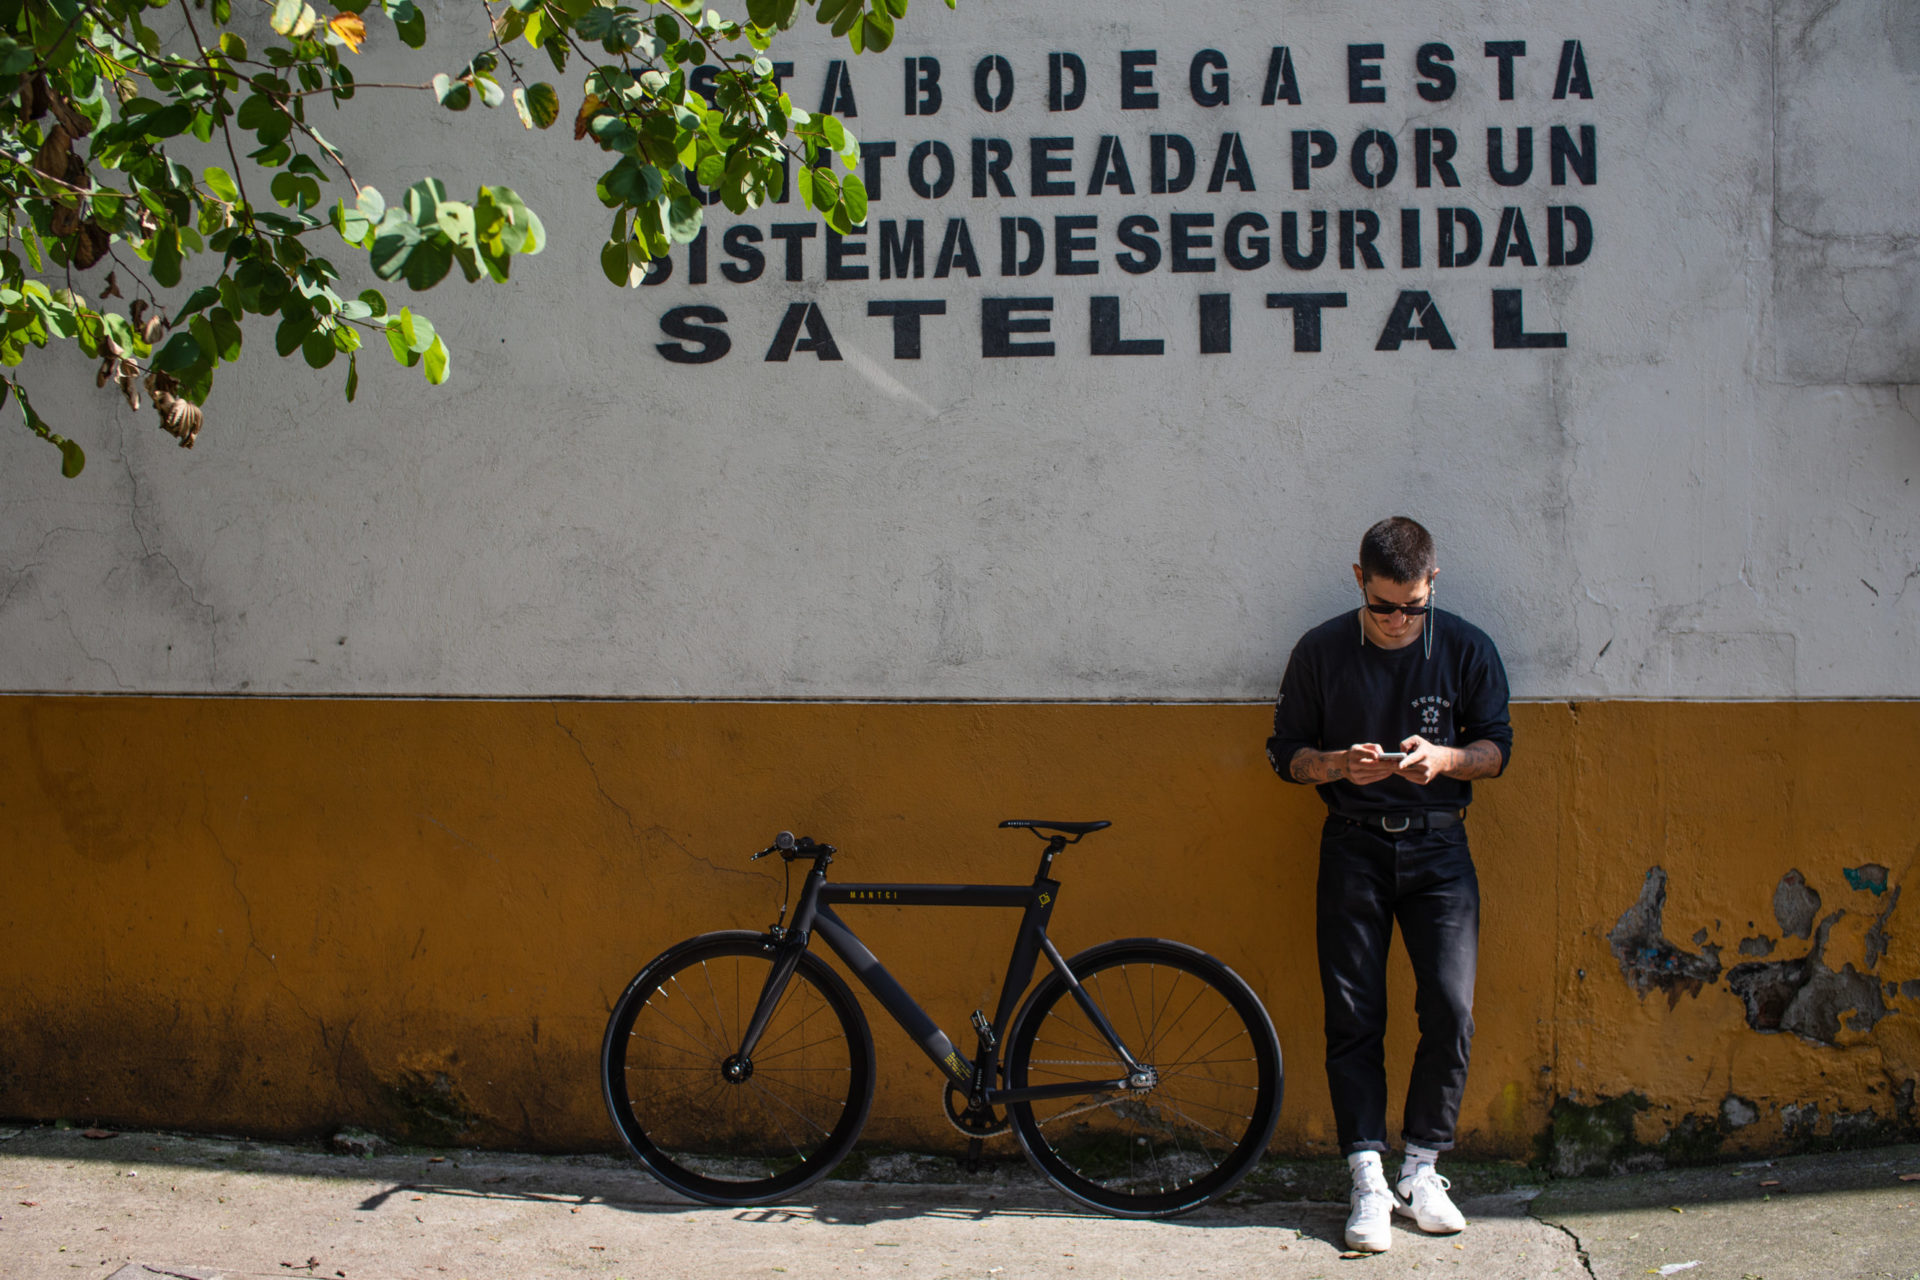 Bicicleta para ciudad, bicicletas, bicis ciudad, bicicletas de ciudad, fixie, single speed, bicis urbanas, bicicletas urbanas, bicis sin cambios, bicicletas sin cambios